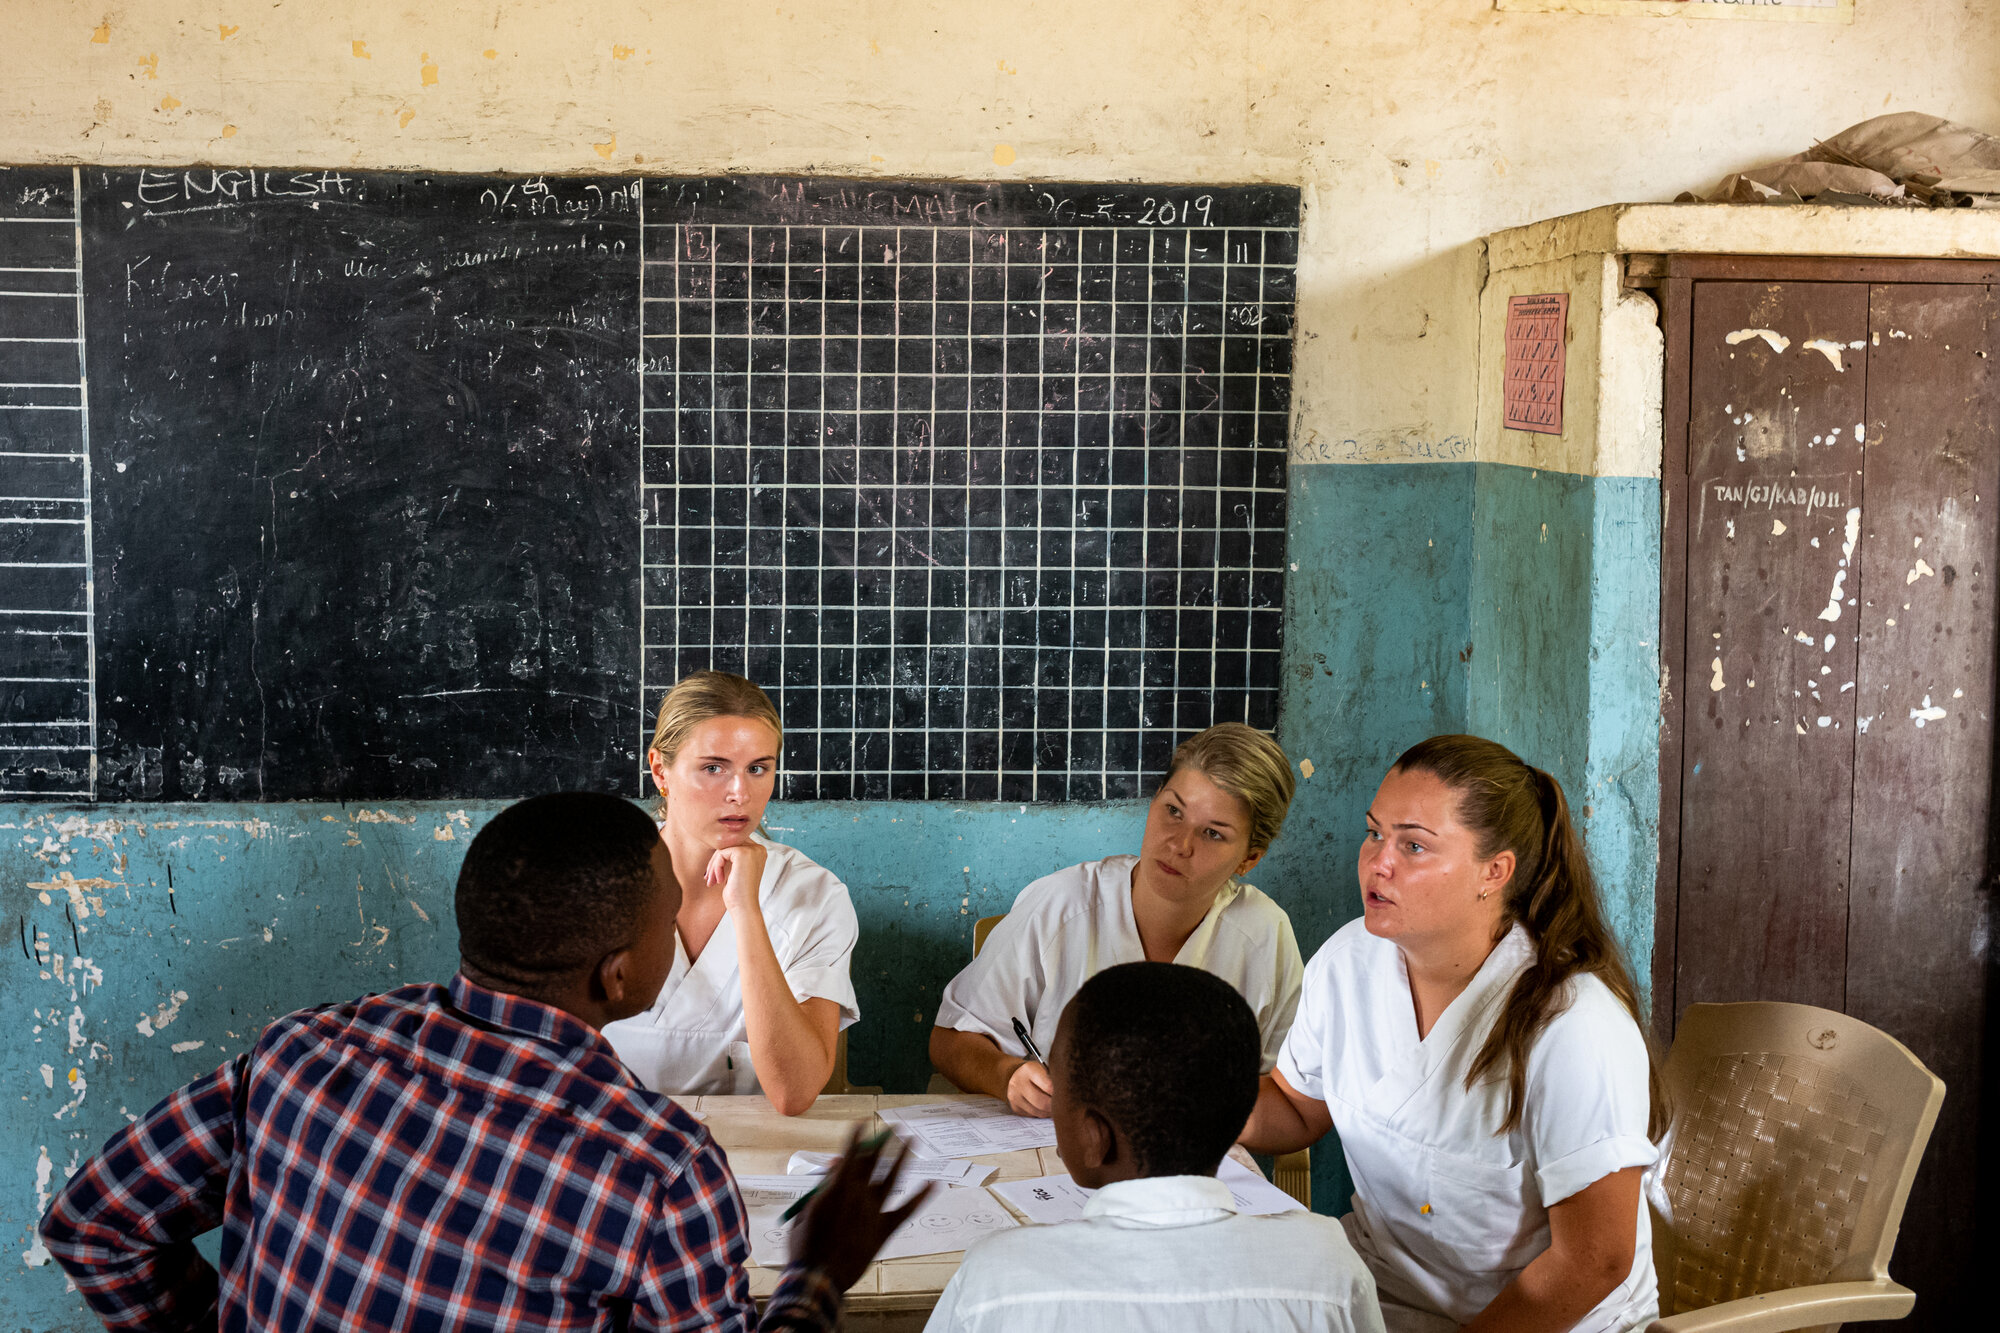 Bildet viser tre sykepleierstudenter fra Norge som er i Tanzania. De sitter og snakker med to afrikanske menn.